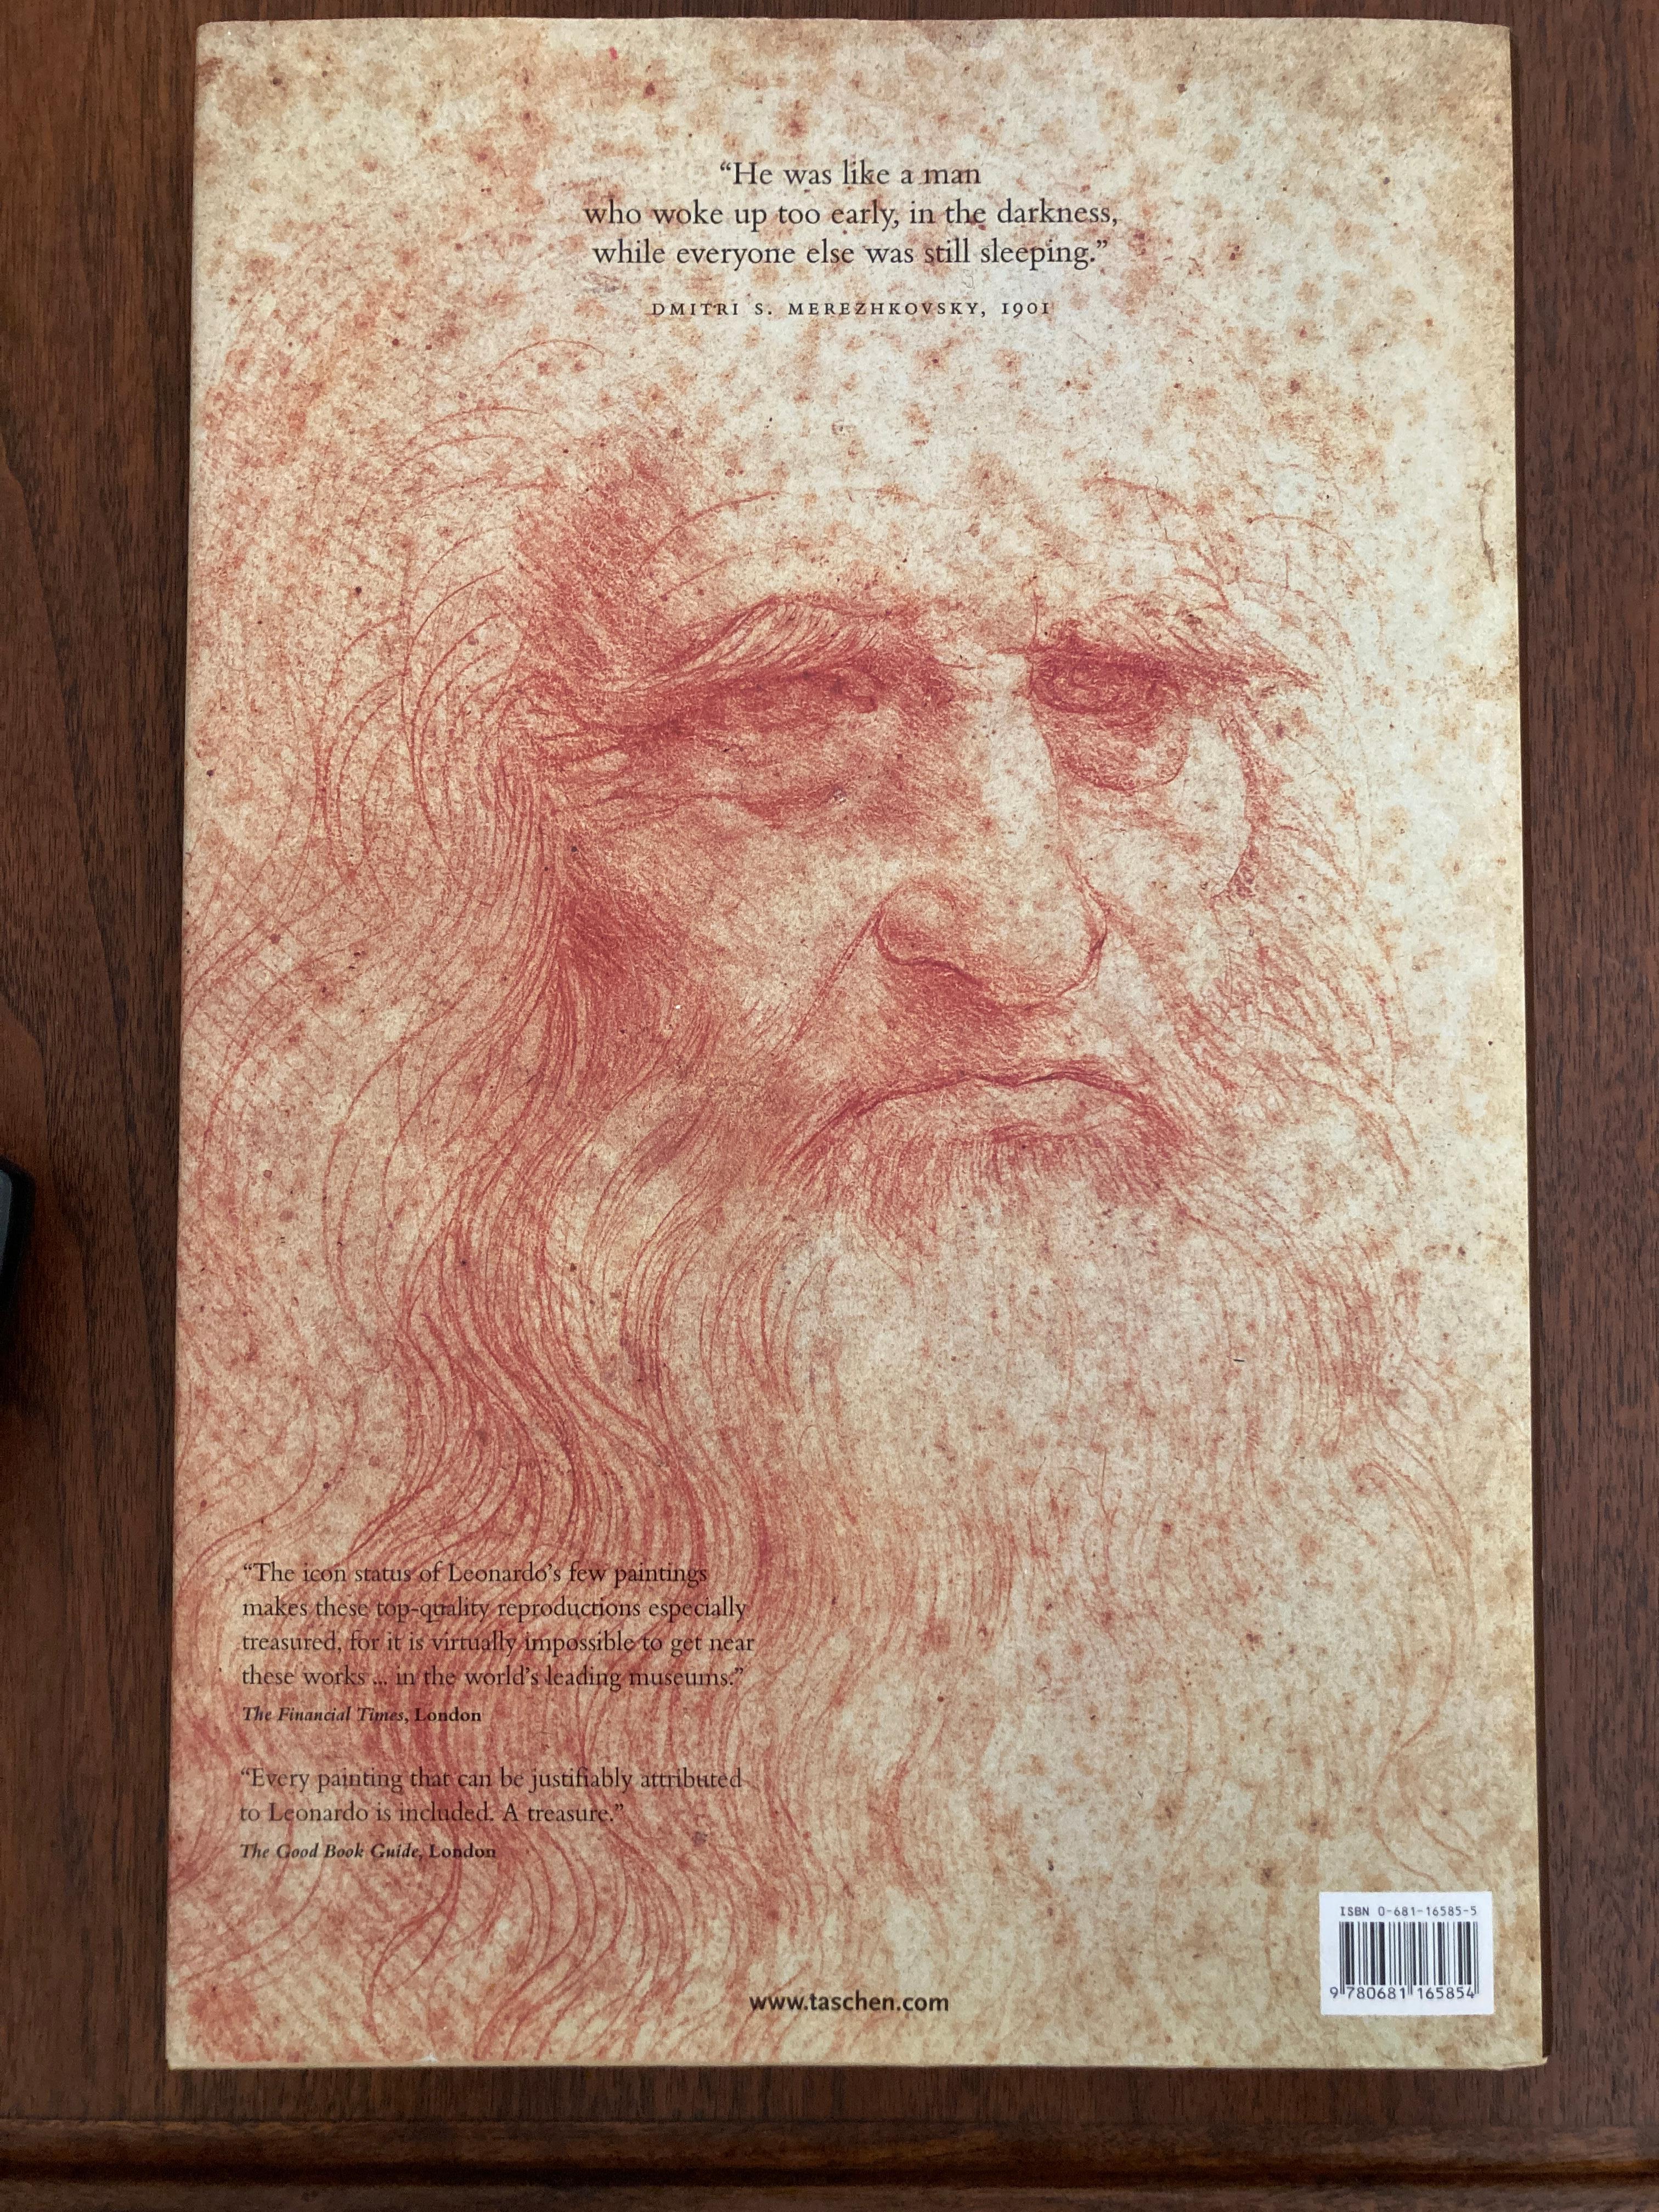 Leonardo da Vinci. Die vollständigen Gemälde .
Hardcover Buch Coffee Table Art Book.
Da Vinci im Detail: Leonardos Leben und Werk alle Gemälde! 
Er ist einer der vollkommensten Menschen, die je gelebt haben.
Leonardo da Vinci (1452 - 1519) ist